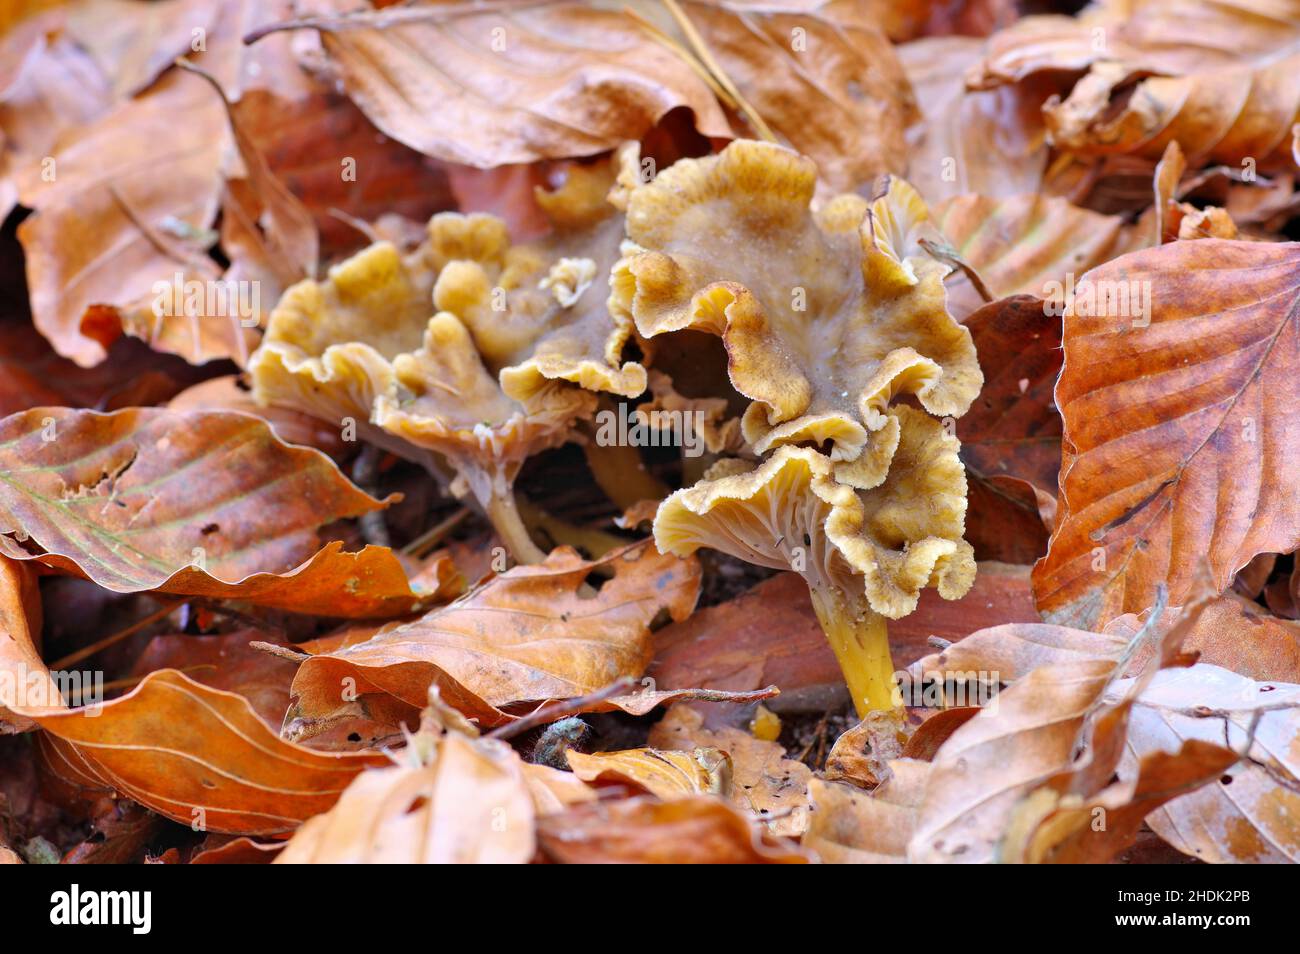 mushroom, mushrooms Stock Photo